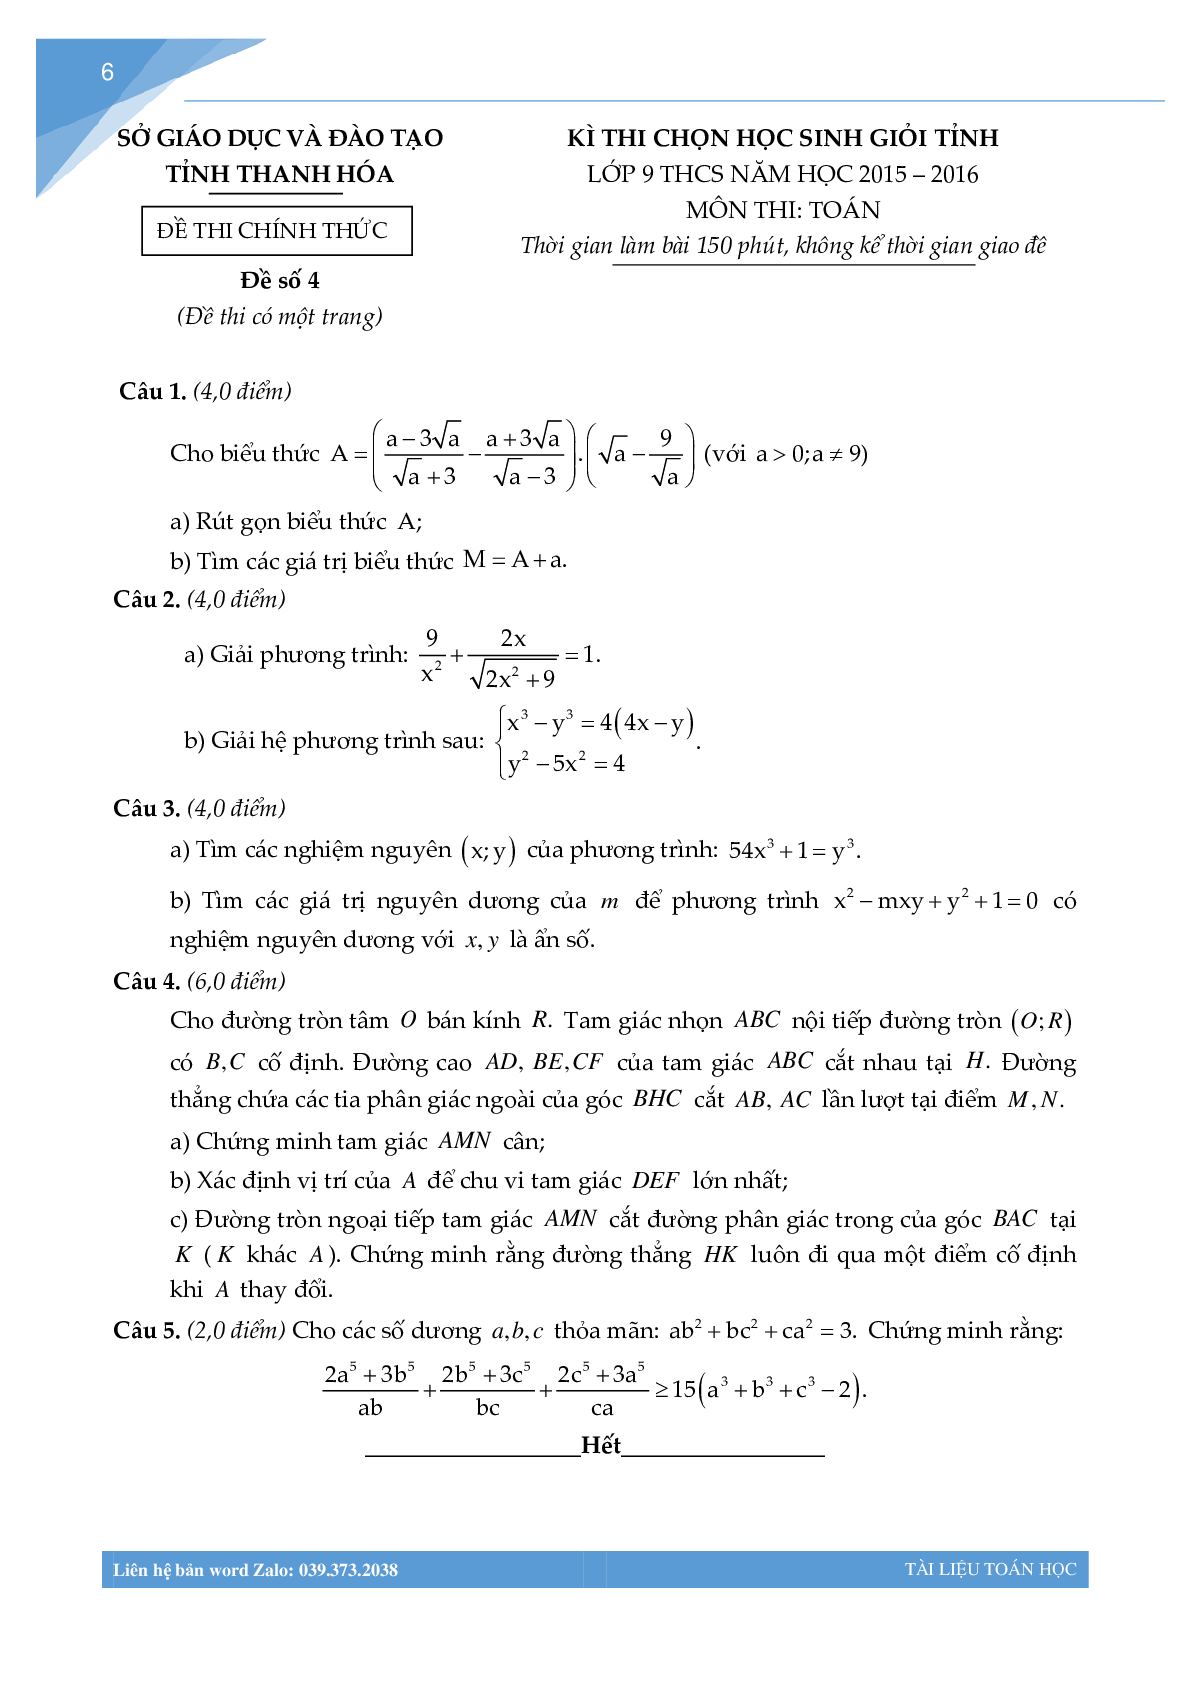 Bộ đề học sinh giỏi môn toán lớp 9 tỉnh Thanh Hóa (trang 5)